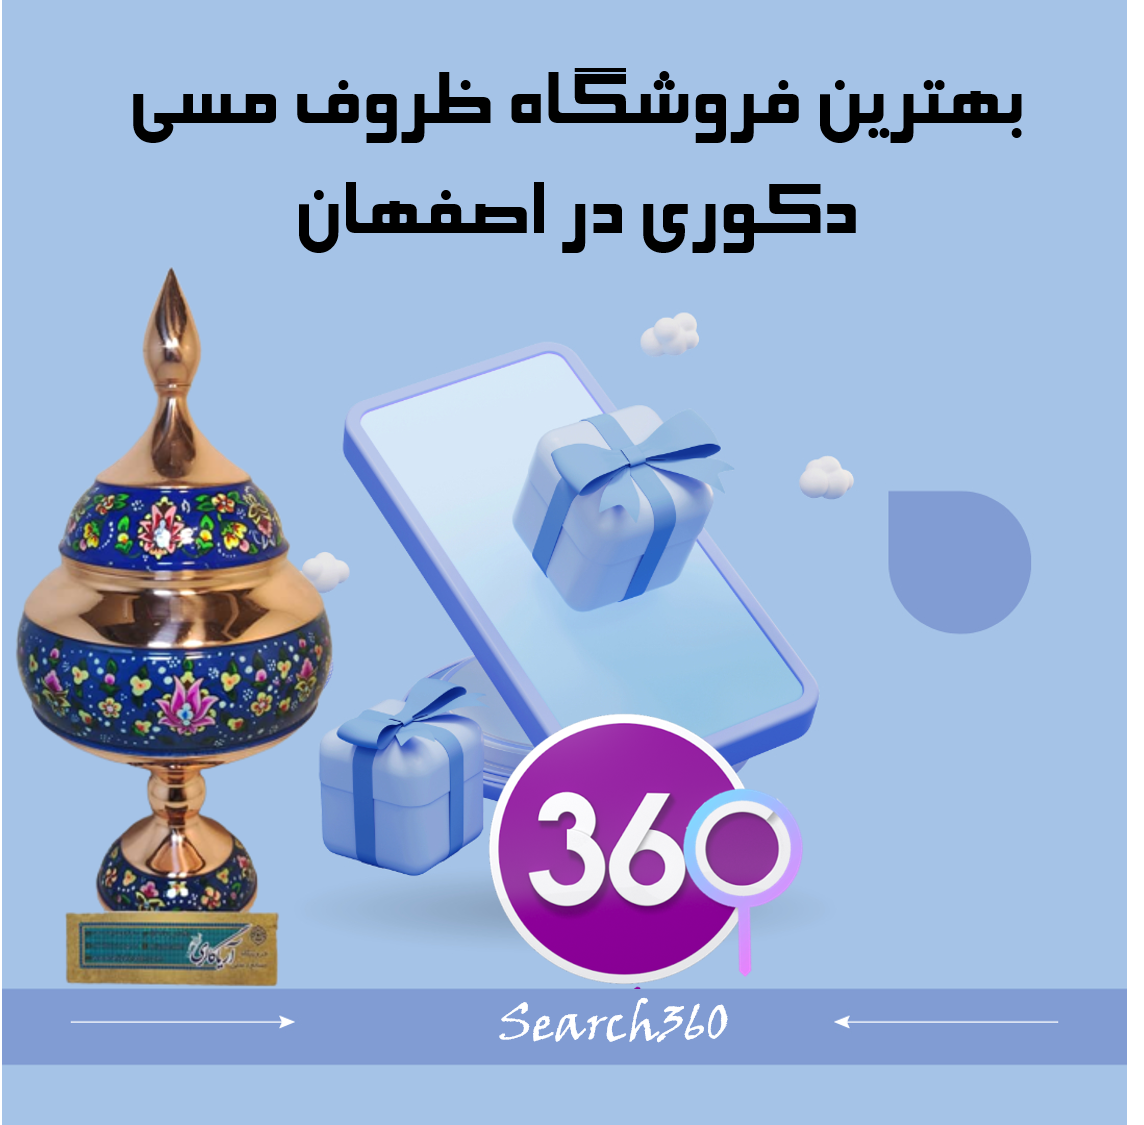 بهترین فروشگاه ظروف مسی دکوری در اصفهان با آدرس و تلفن ☎️ و نظرات